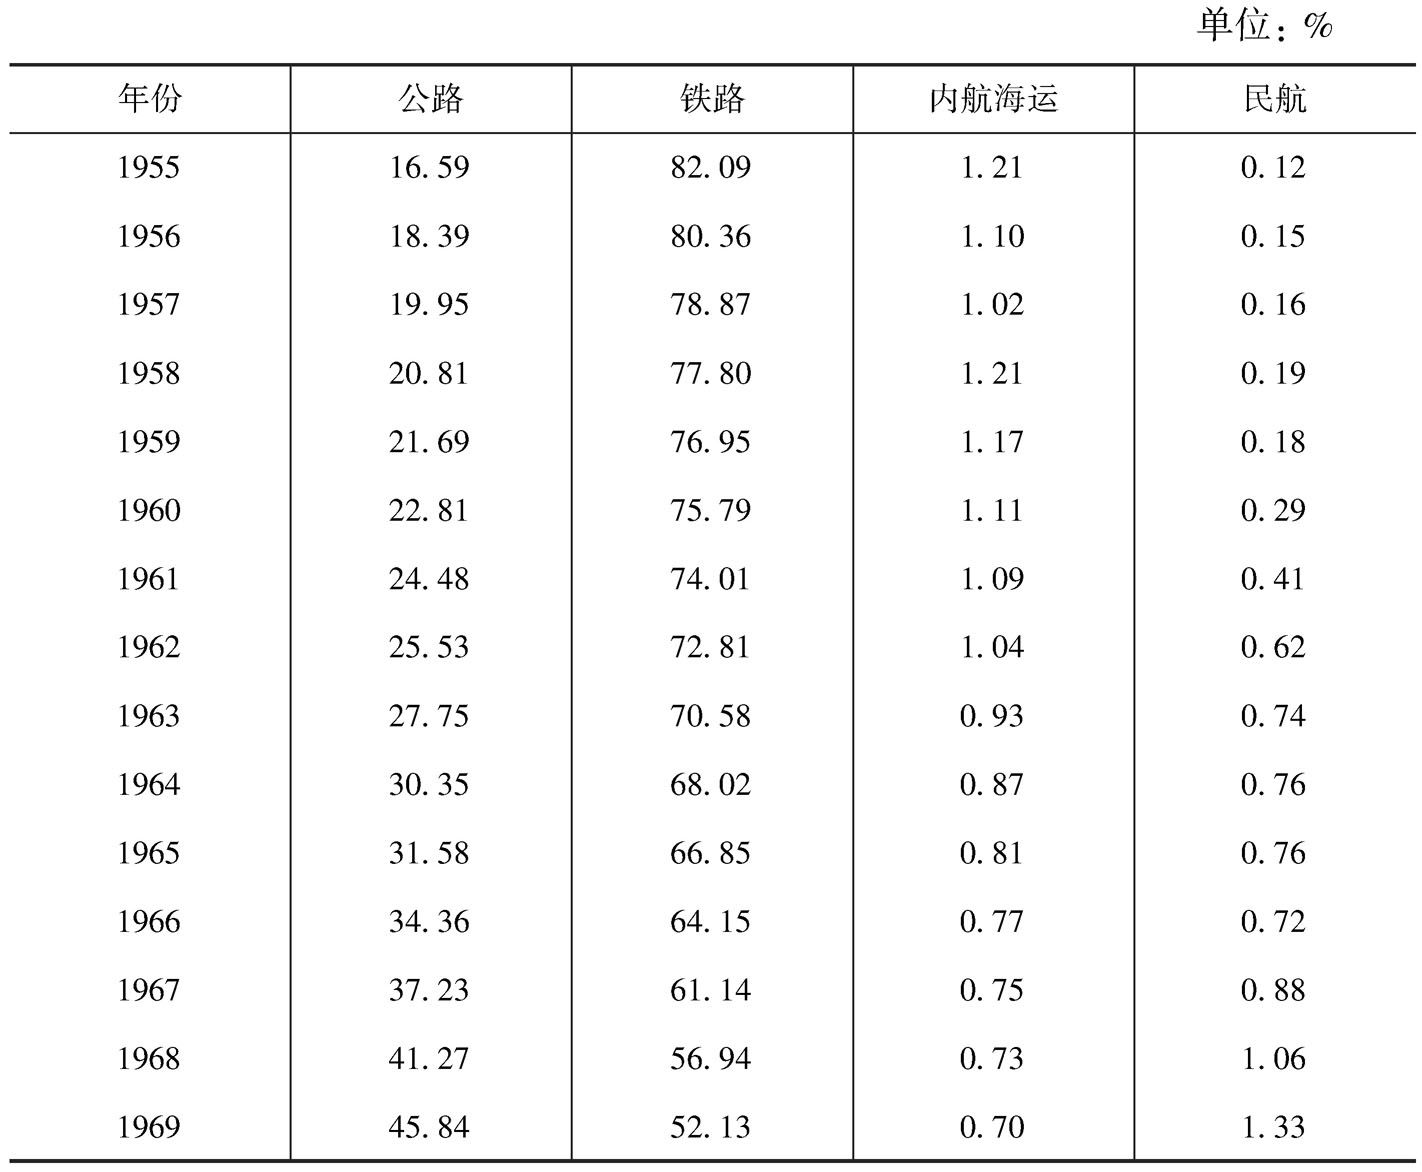 表5-5 1955～1971年间日本各种交通方式的客运周转量分担率